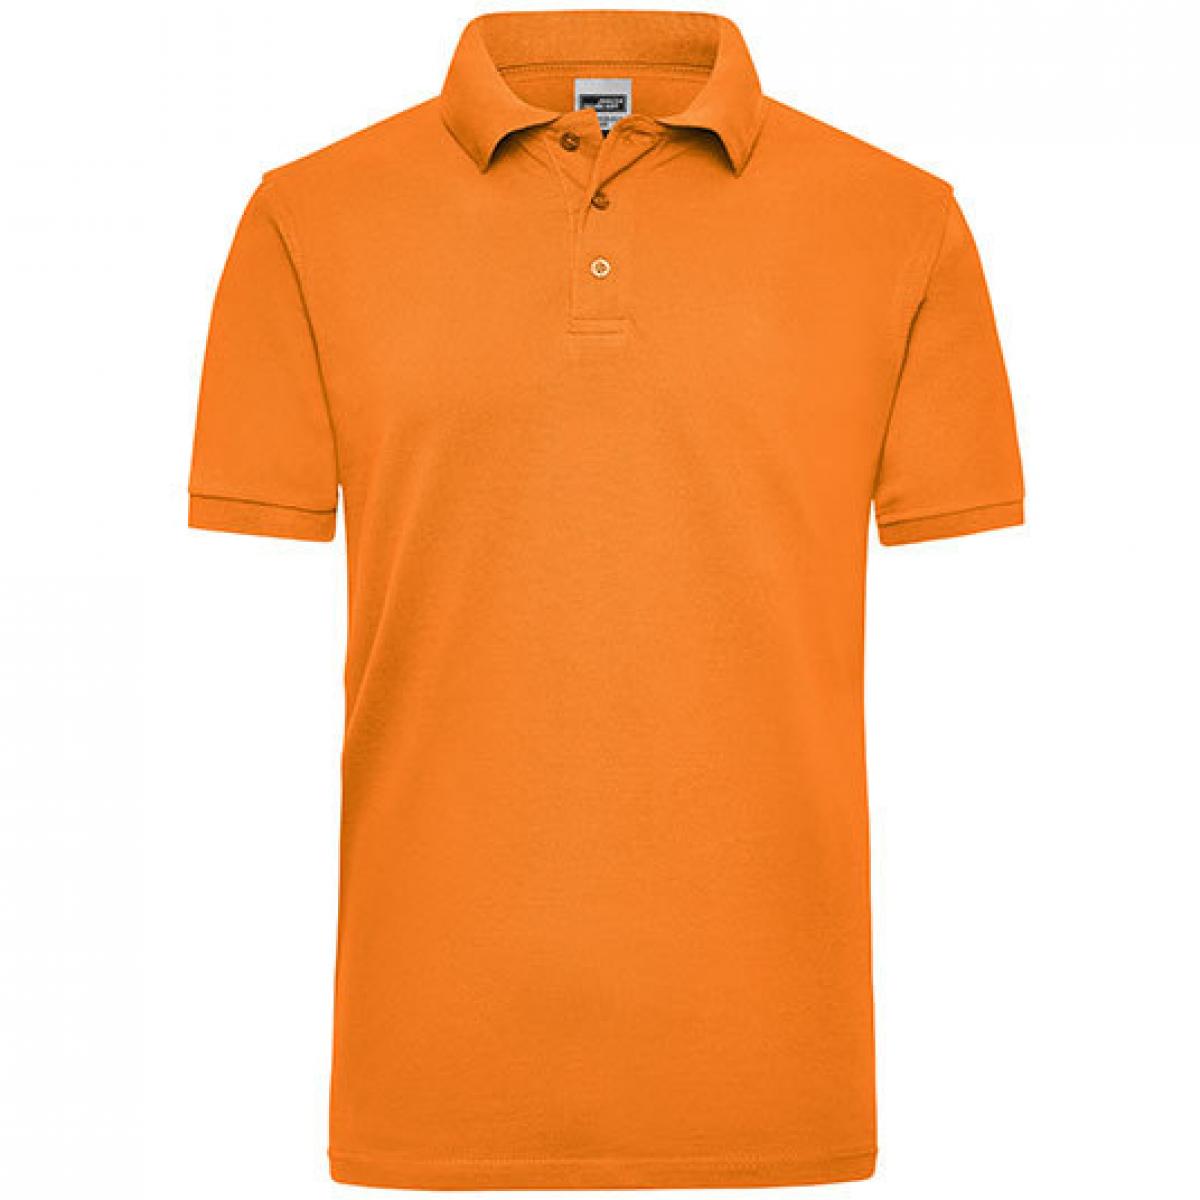 Hersteller: James+Nicholson Herstellernummer: JN 801 Artikelbezeichnung: Workwear Herren Poloshirt Men Farbe: Orange